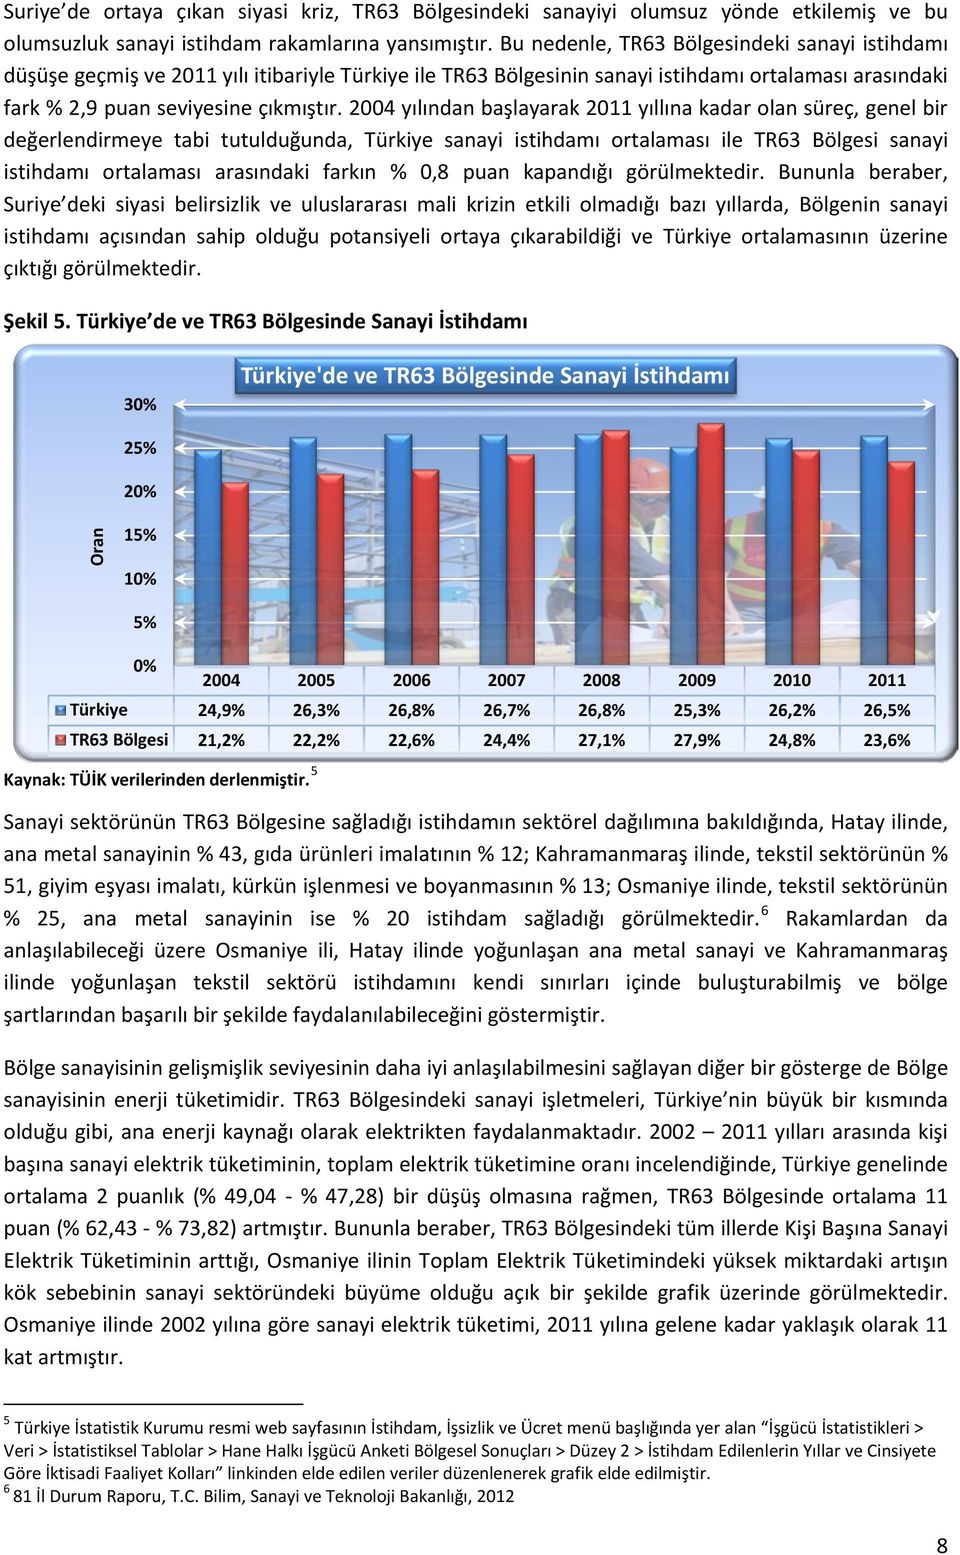 2004 yılından başlayarak 2011 yıllına kadar olan süreç, genel bir değerlendirmeye tabi tutulduğunda, Türkiye sanayi istihdamı ortalaması ile TR63 Bölgesi sanayi istihdamı ortalaması arasındaki farkın